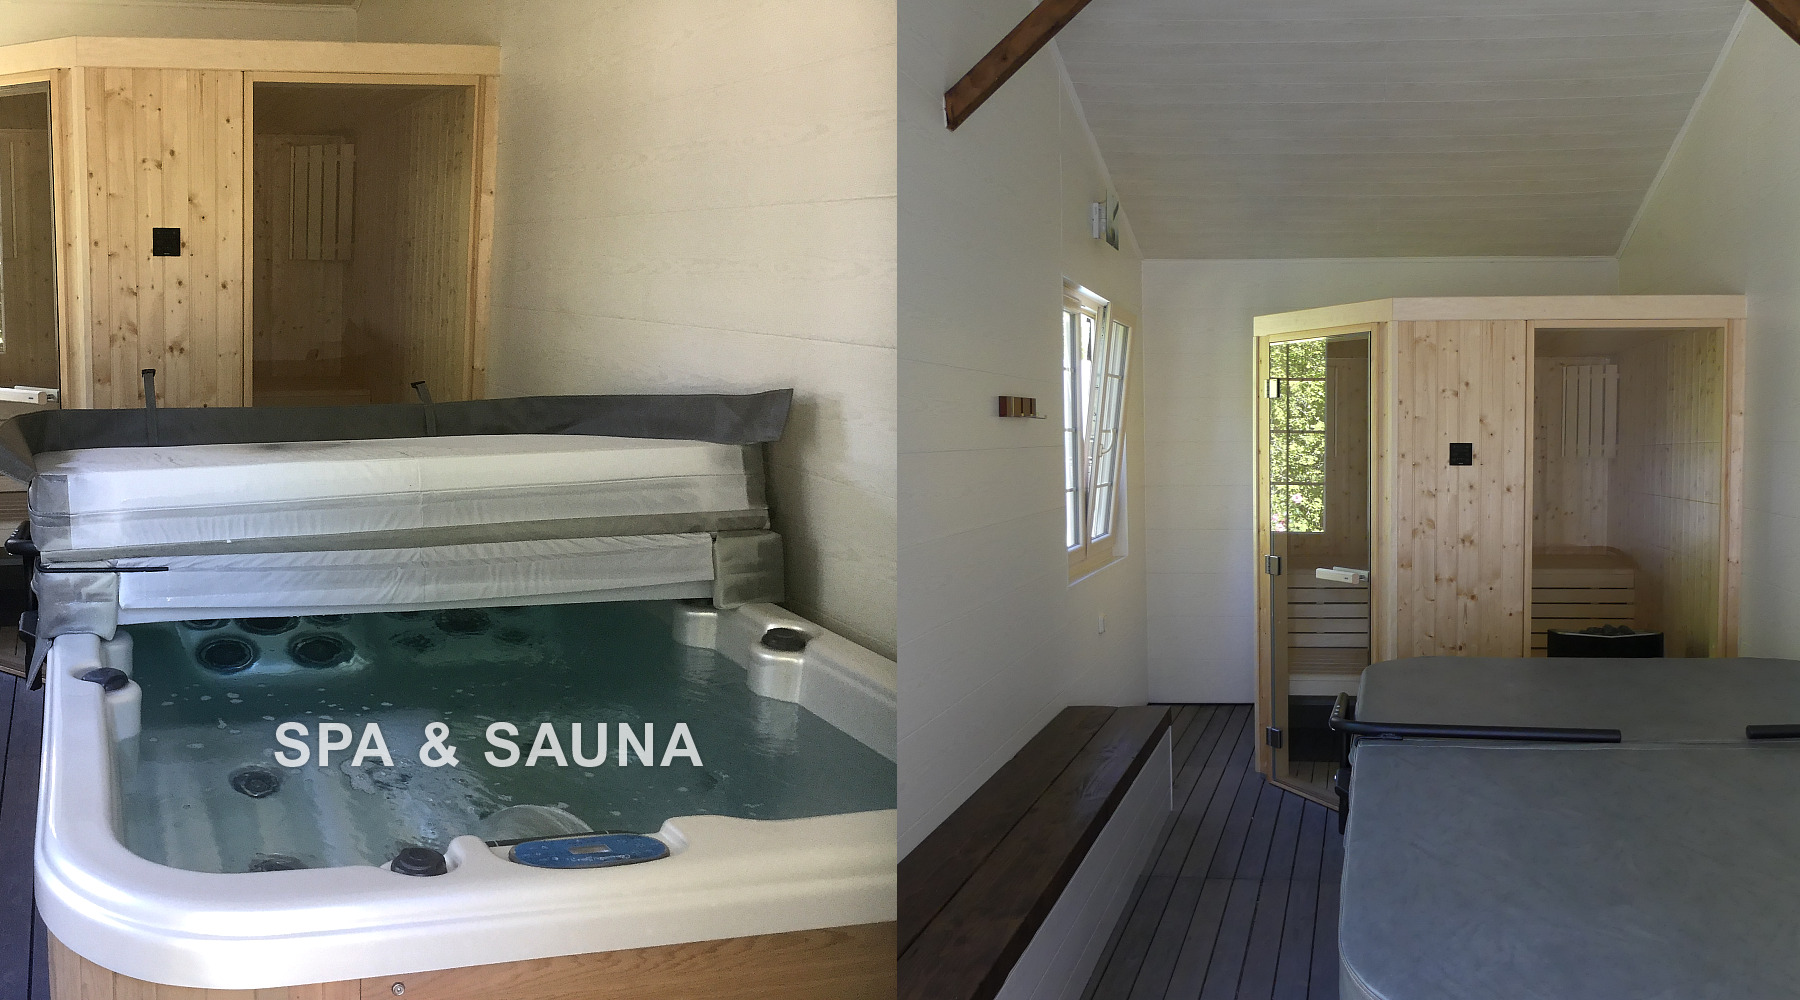 Spa & Sauna